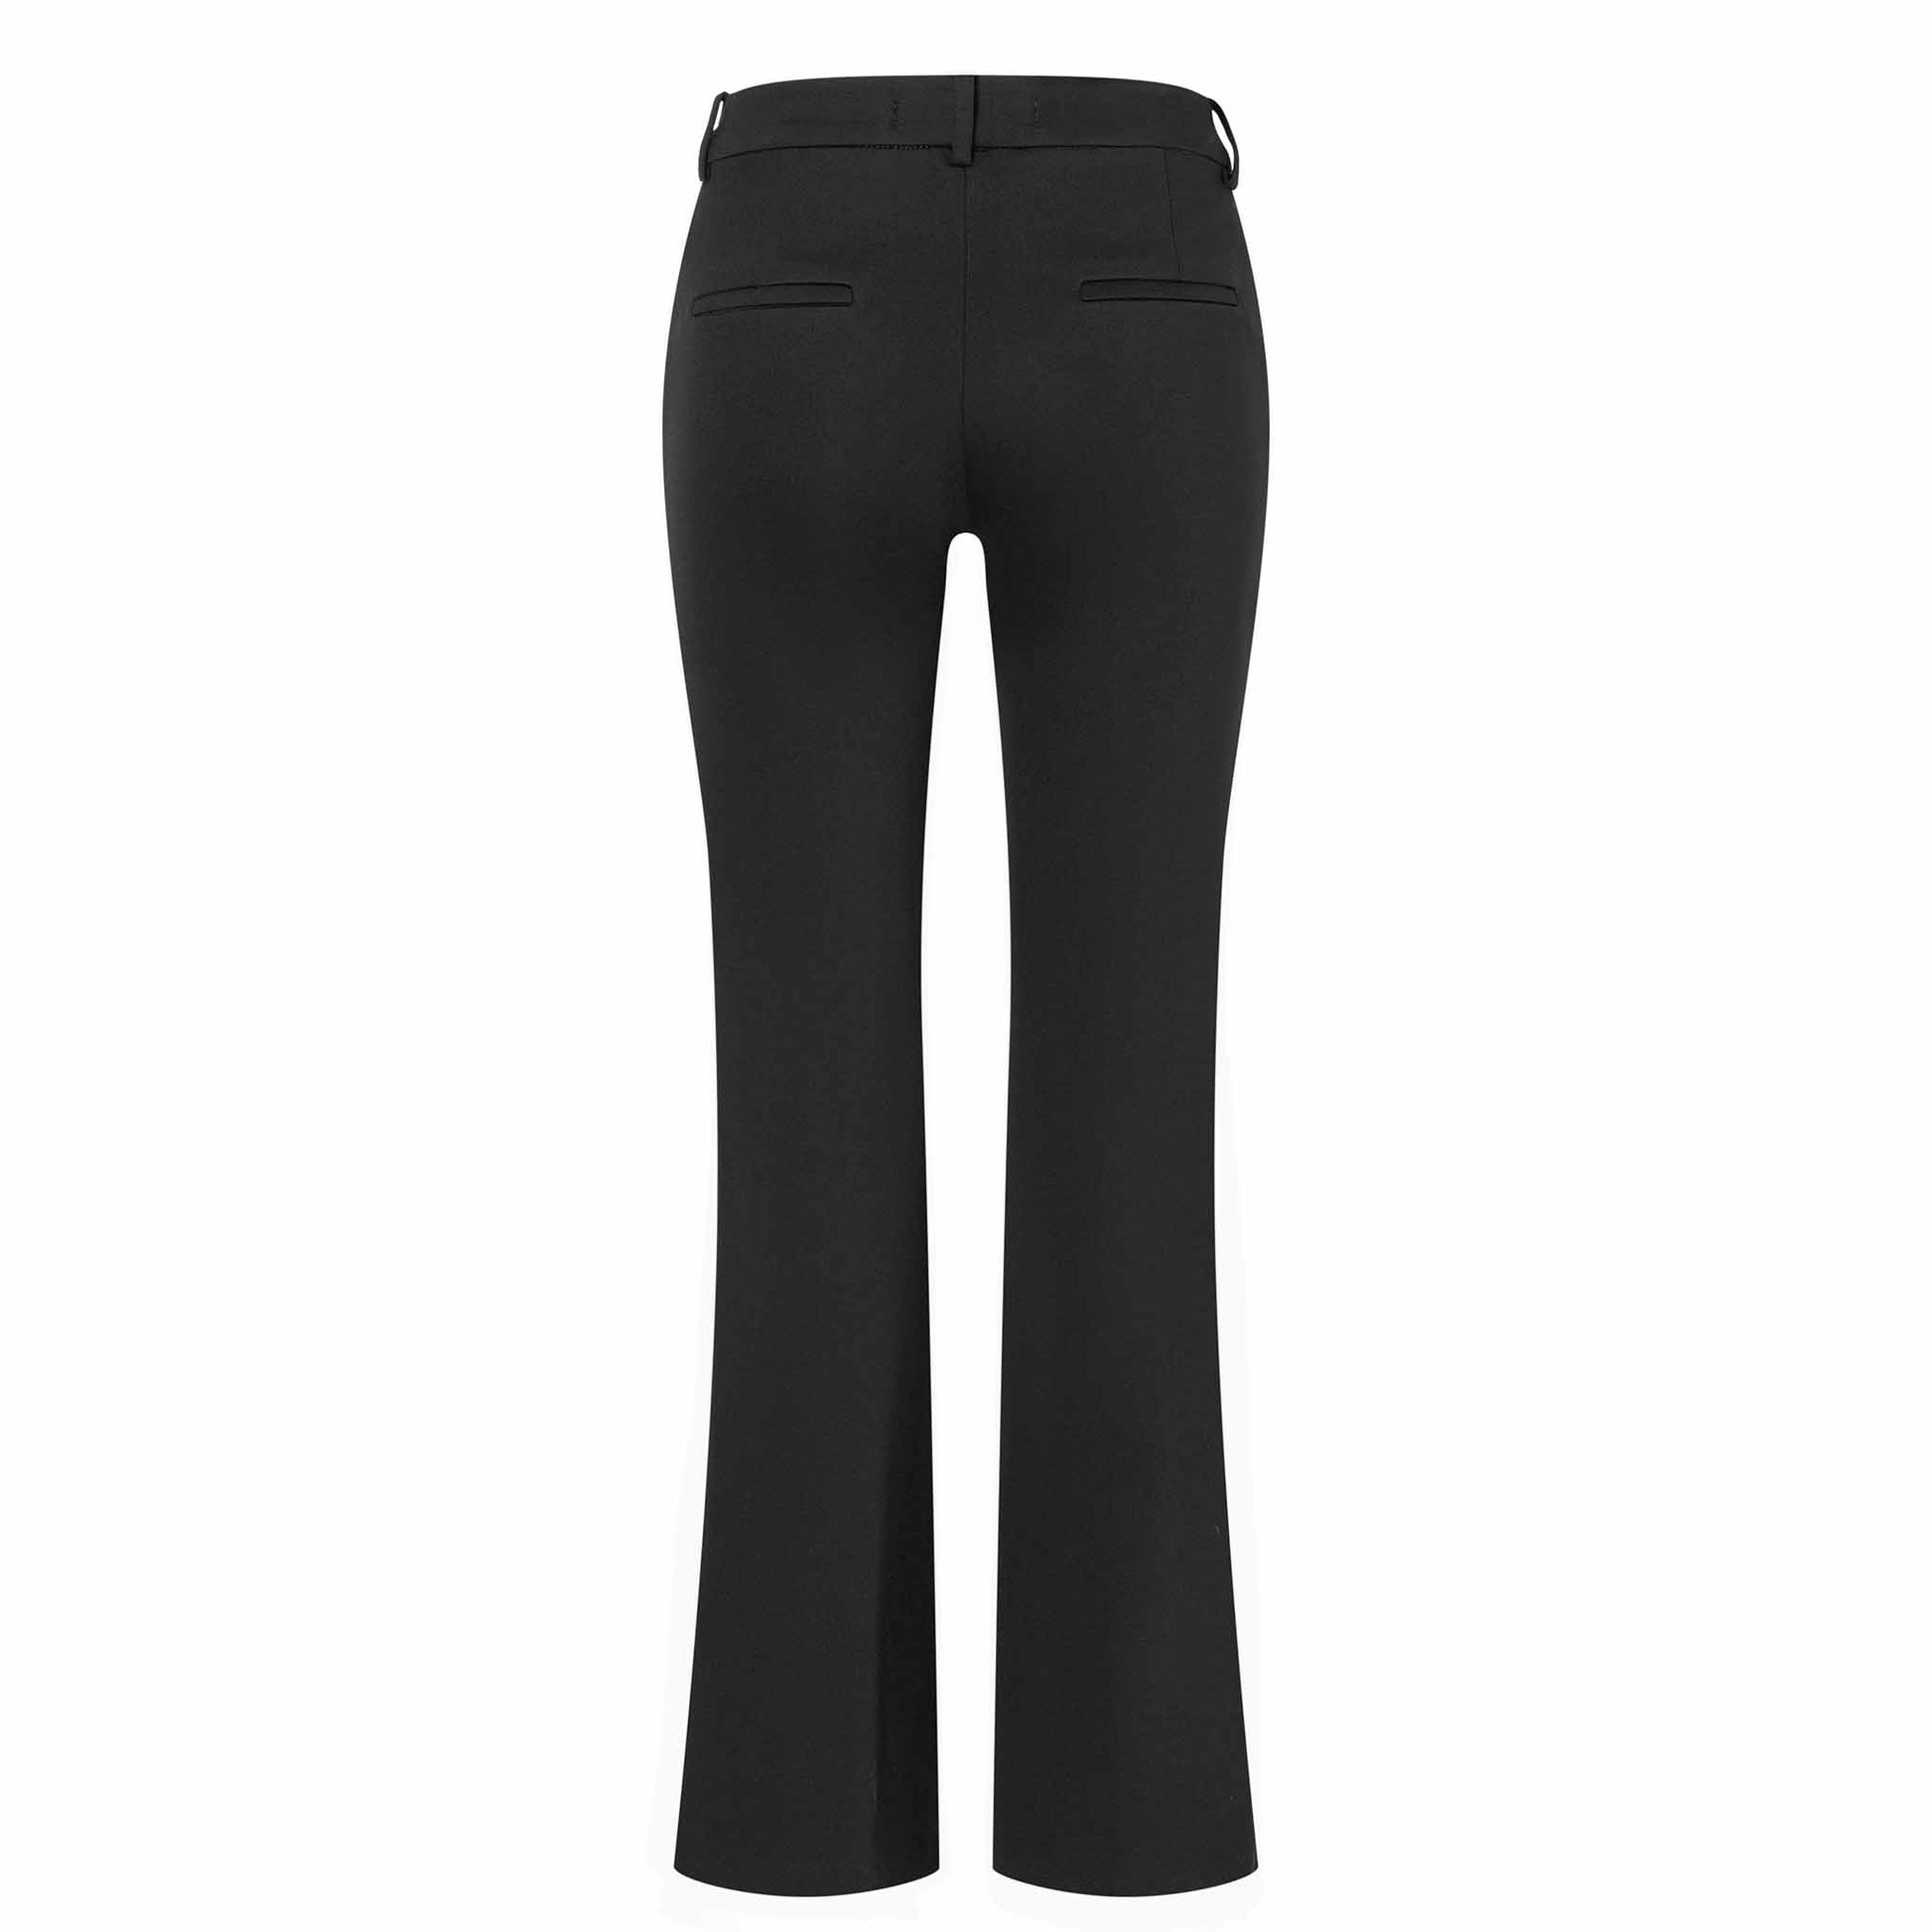 kleding lange vrouwen mac jeans dream luxury black